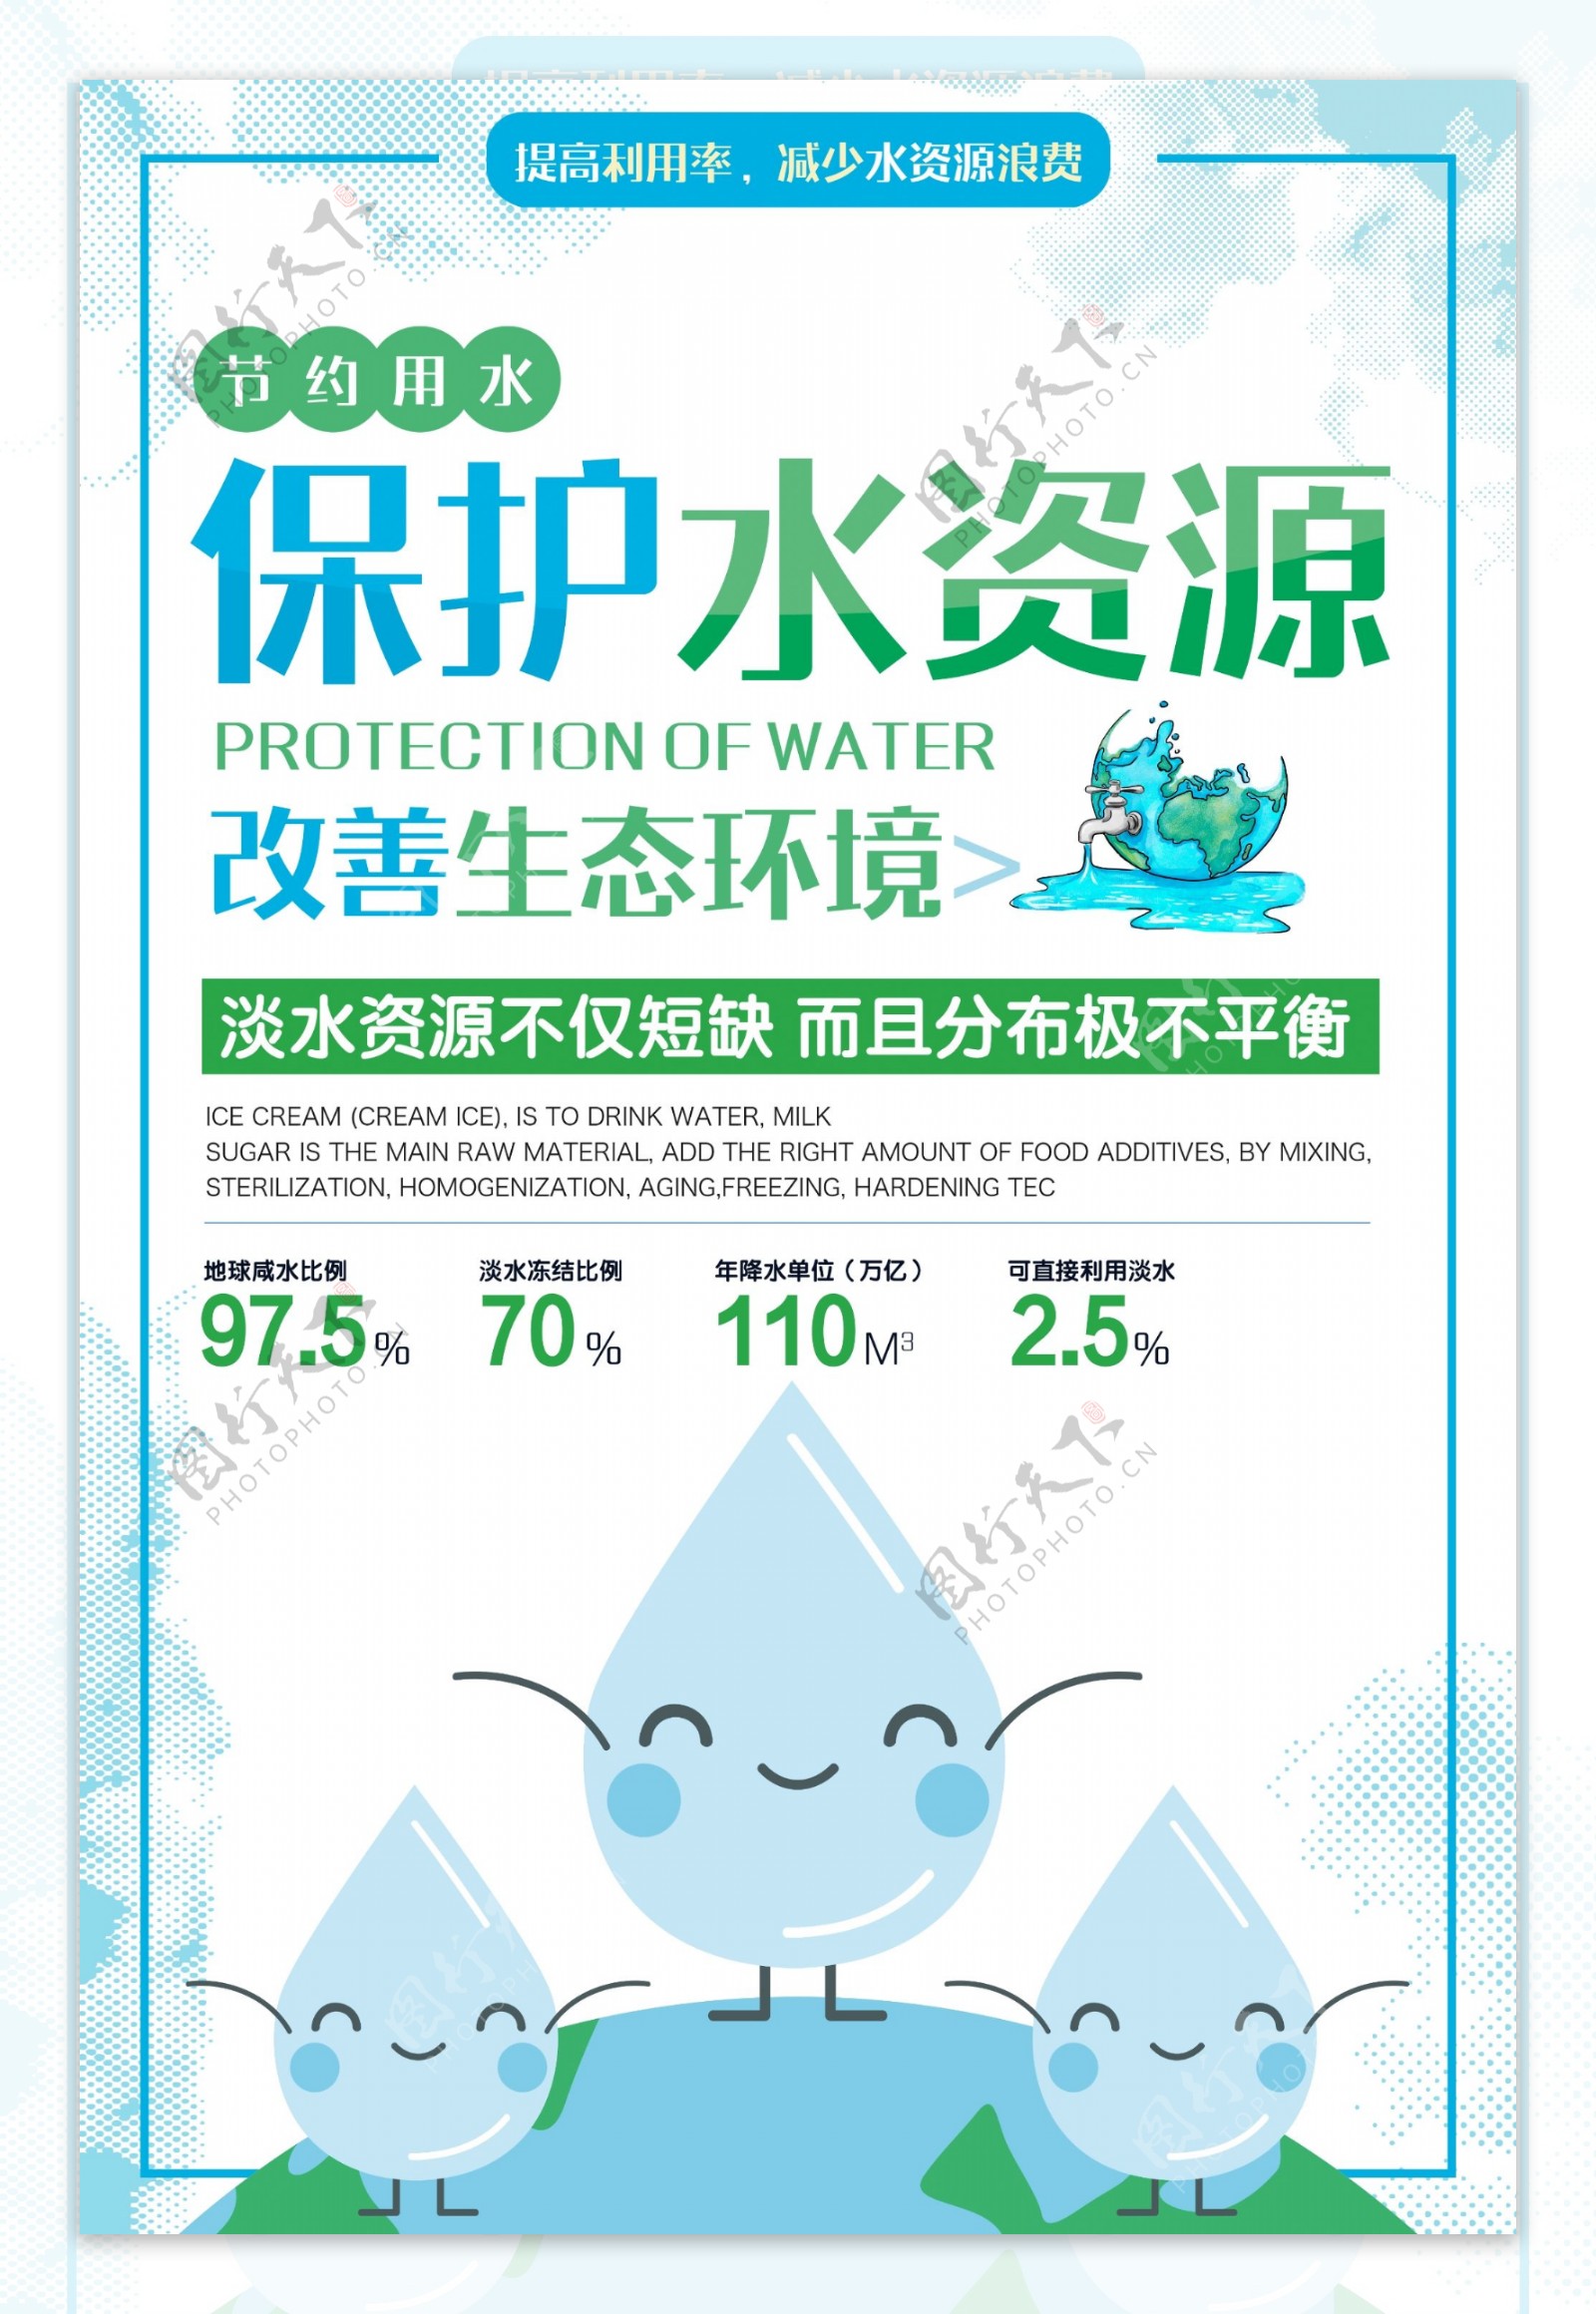 节约用水保护资源宣传海报